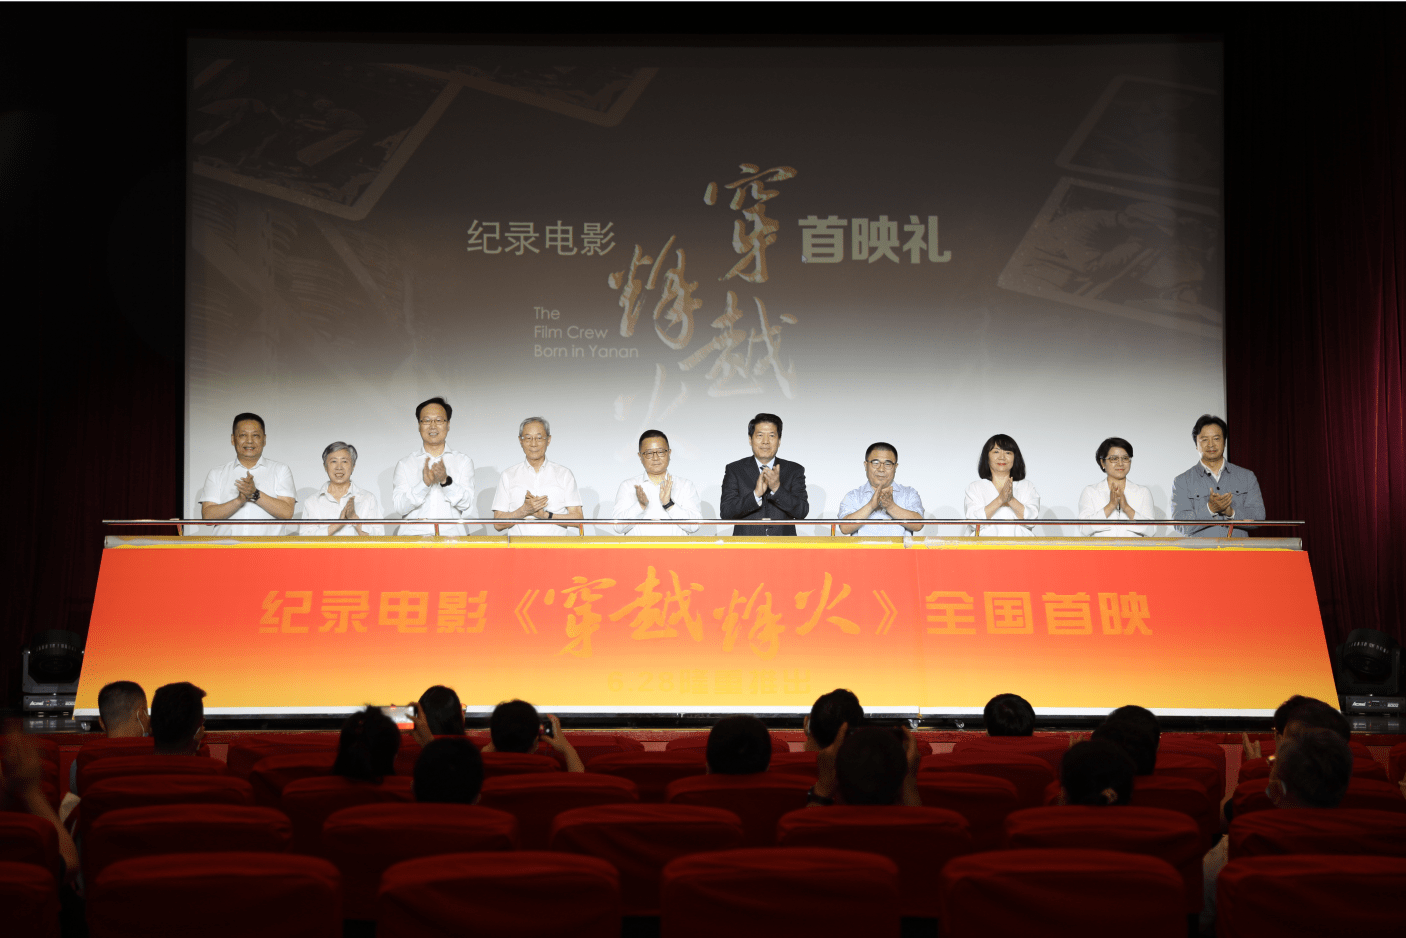 纪录电影《穿越烽火》全国首映礼在北京举行